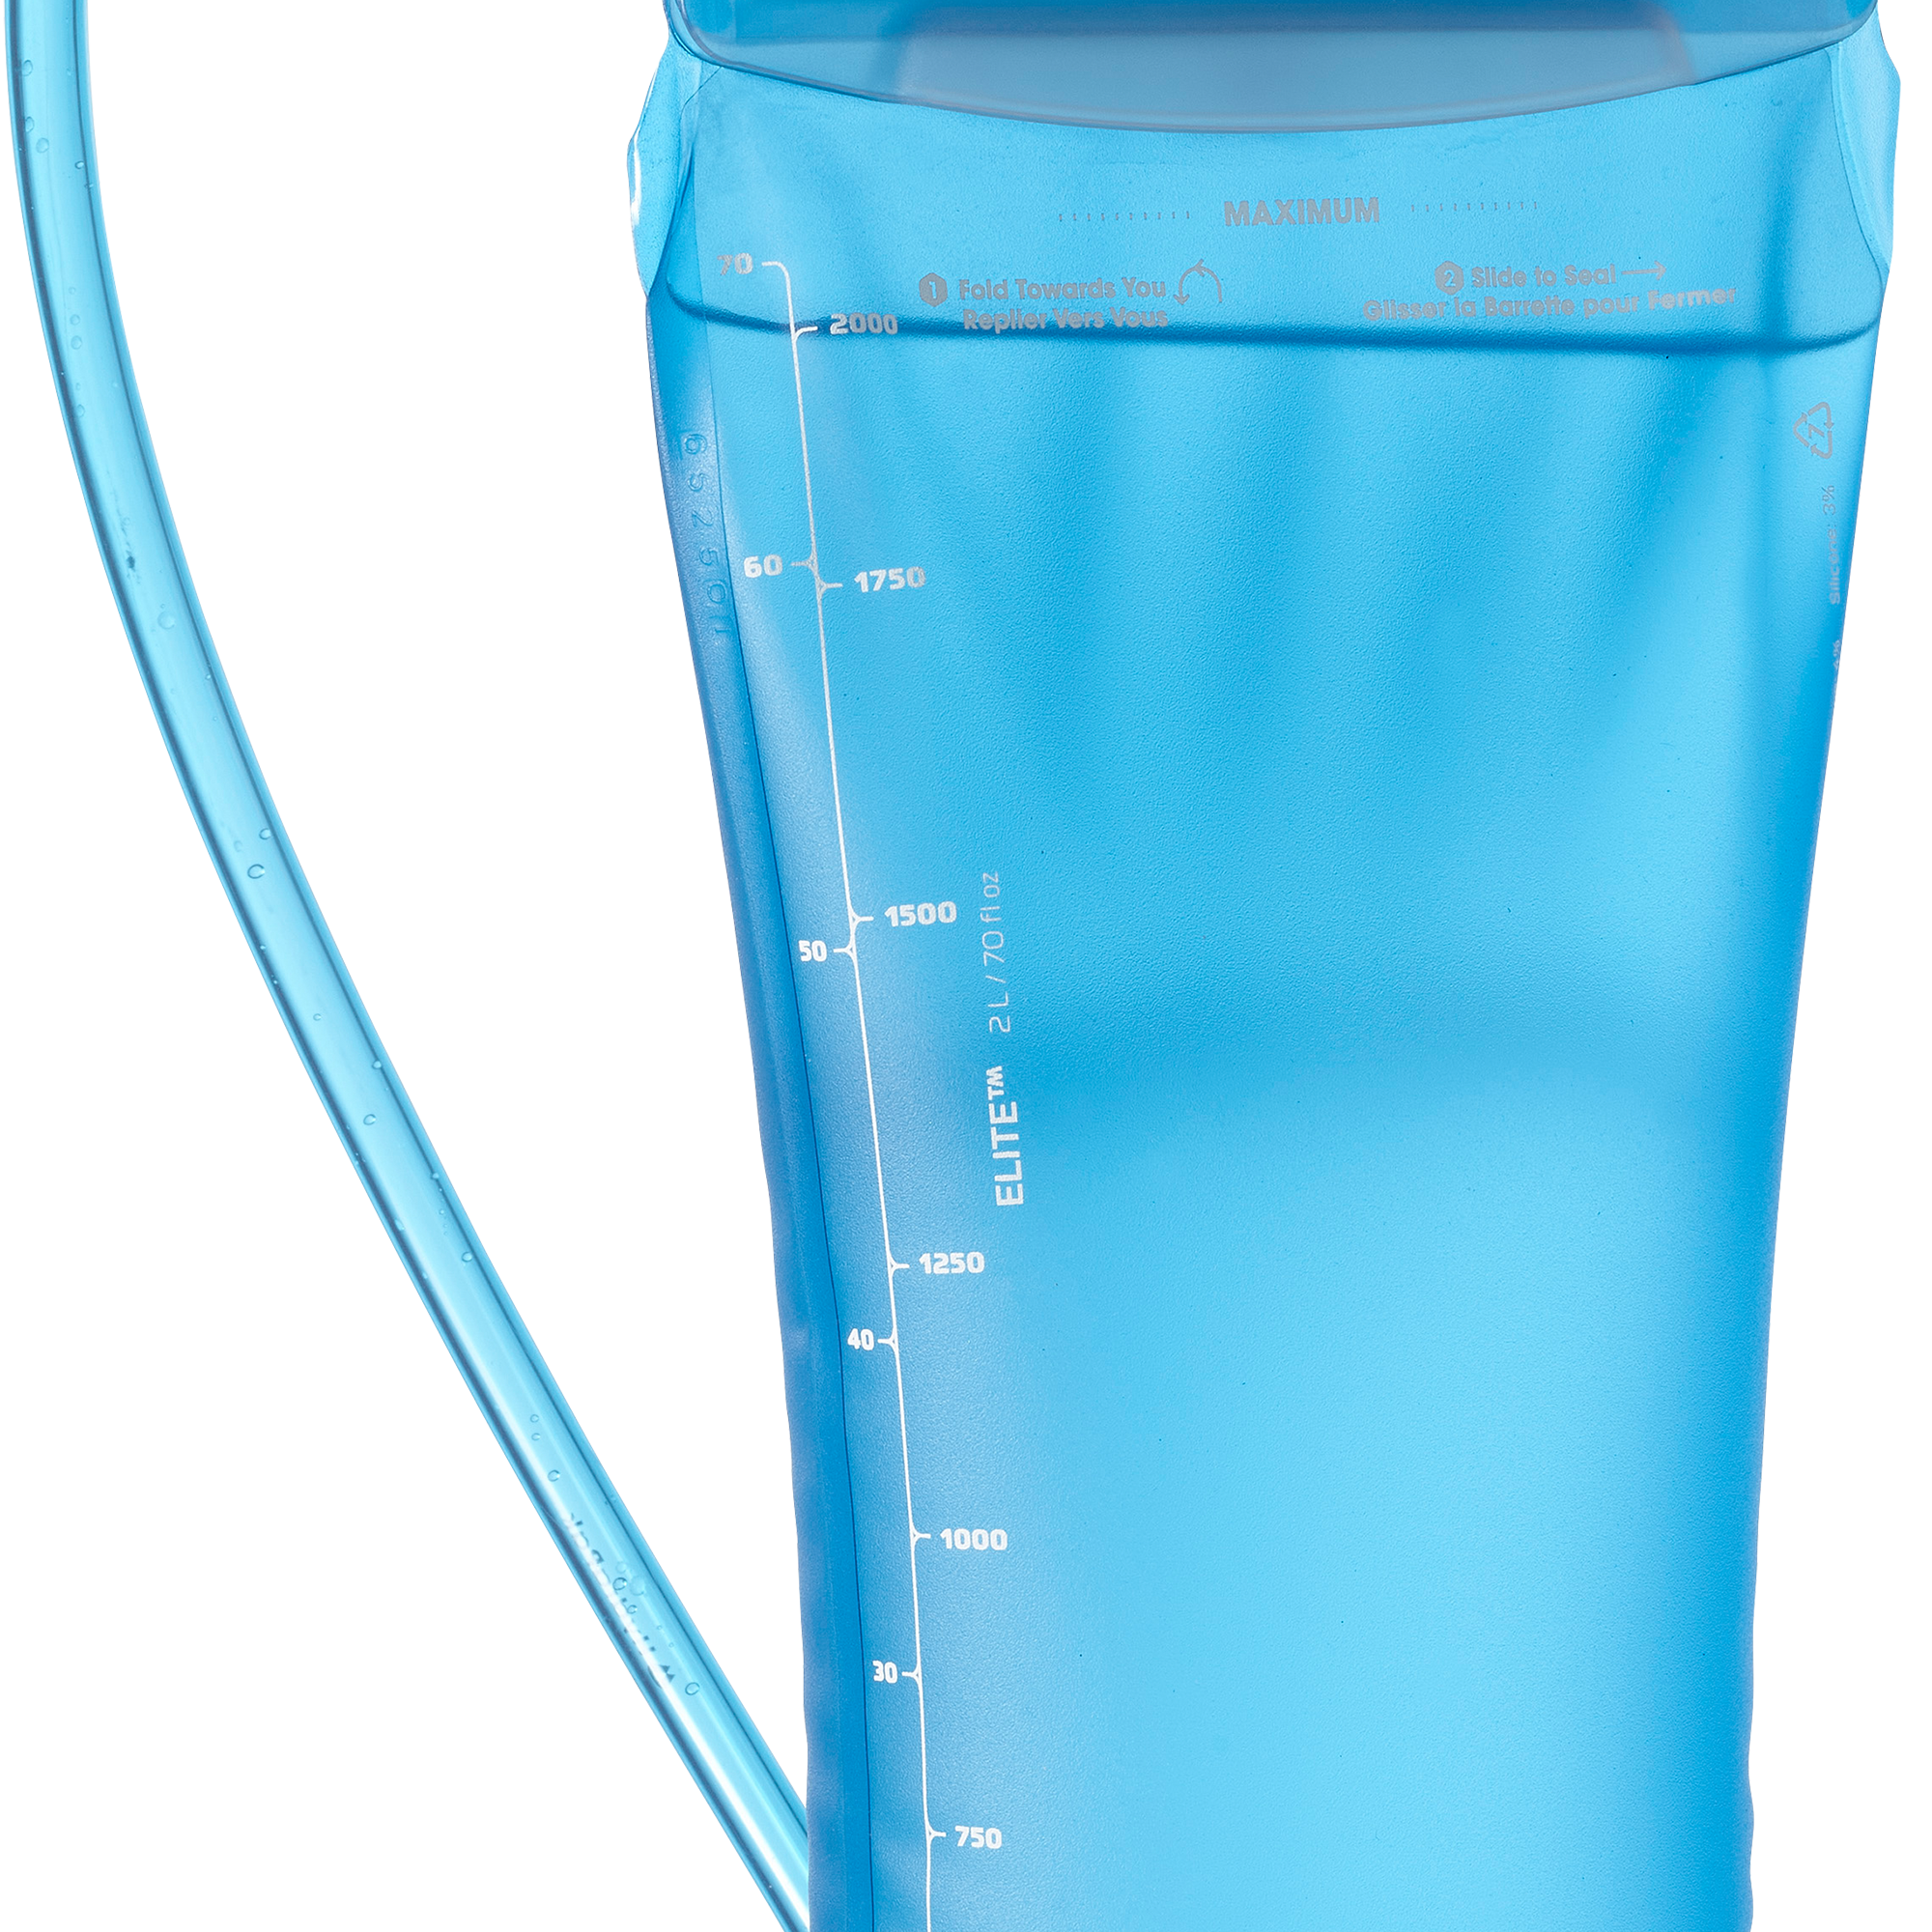 Salomon Soft Reservoir 2L Elite HYDRATION - Bottles and Flasks CLEAR BLUE